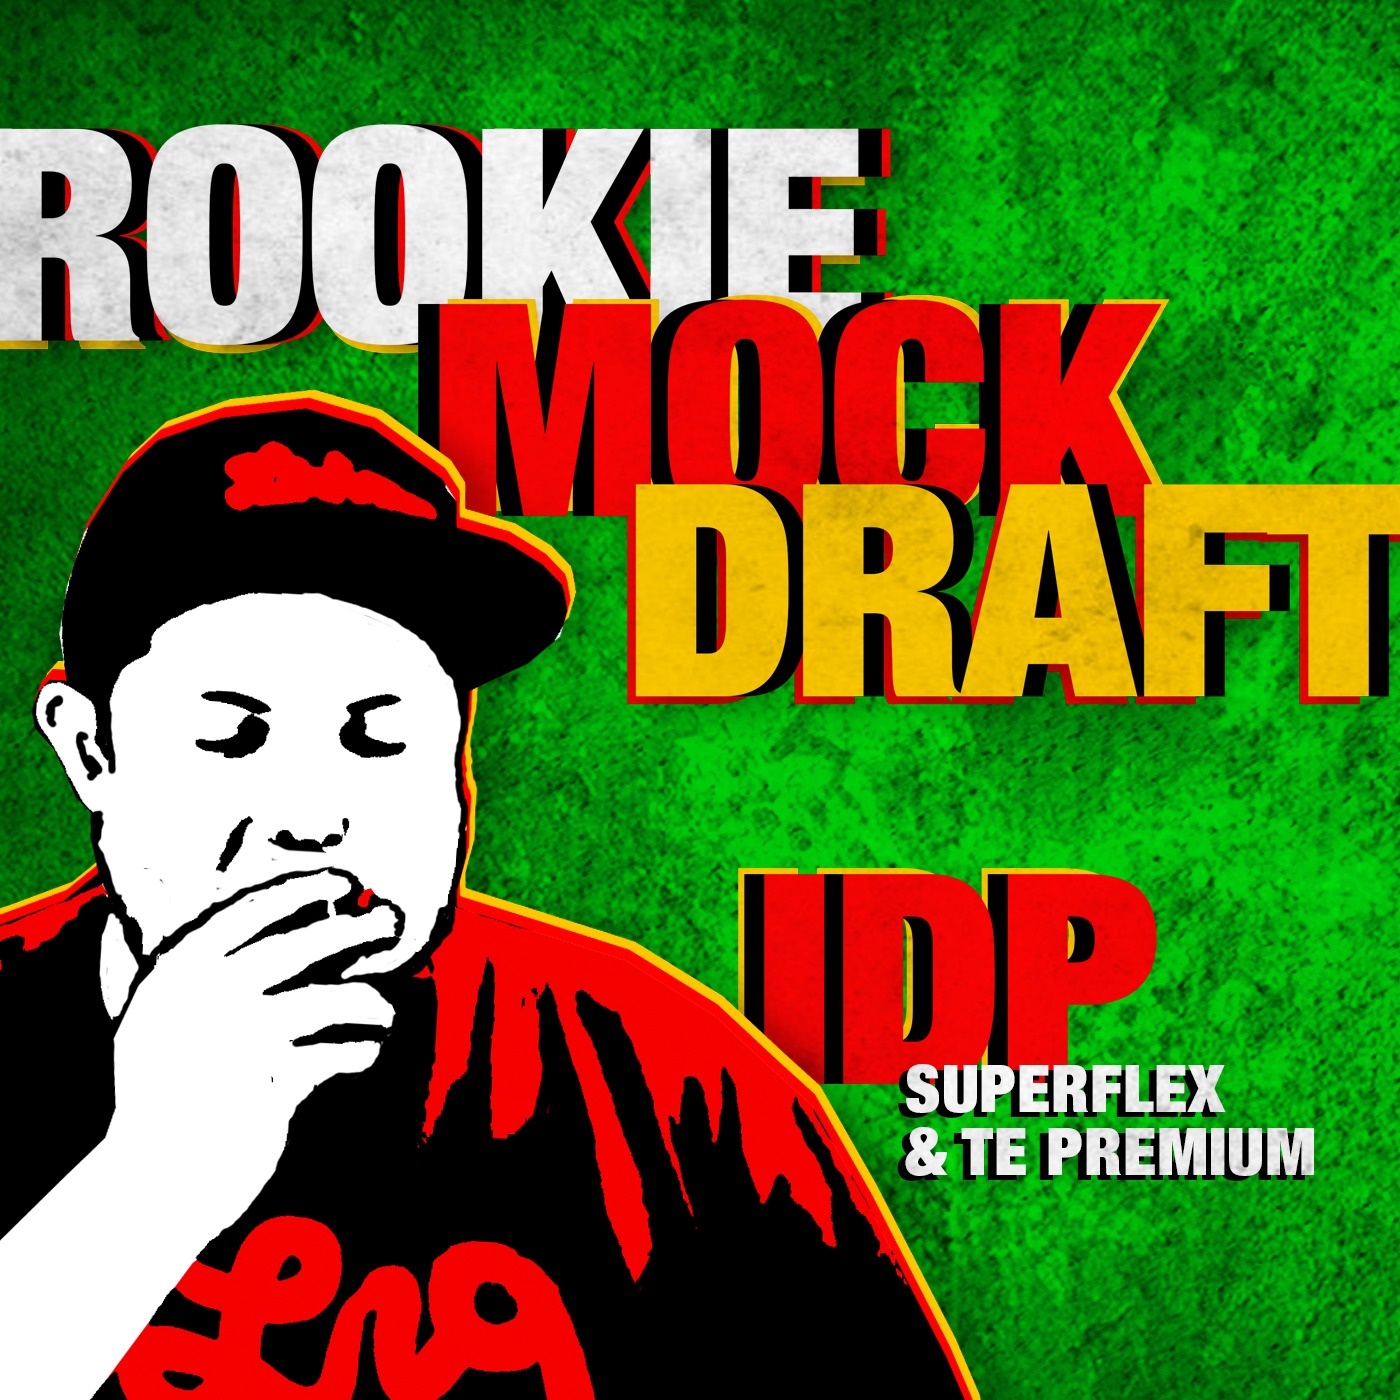 2022 Rookie IDP Mock Draft with SuperFlex & TE Premium Image